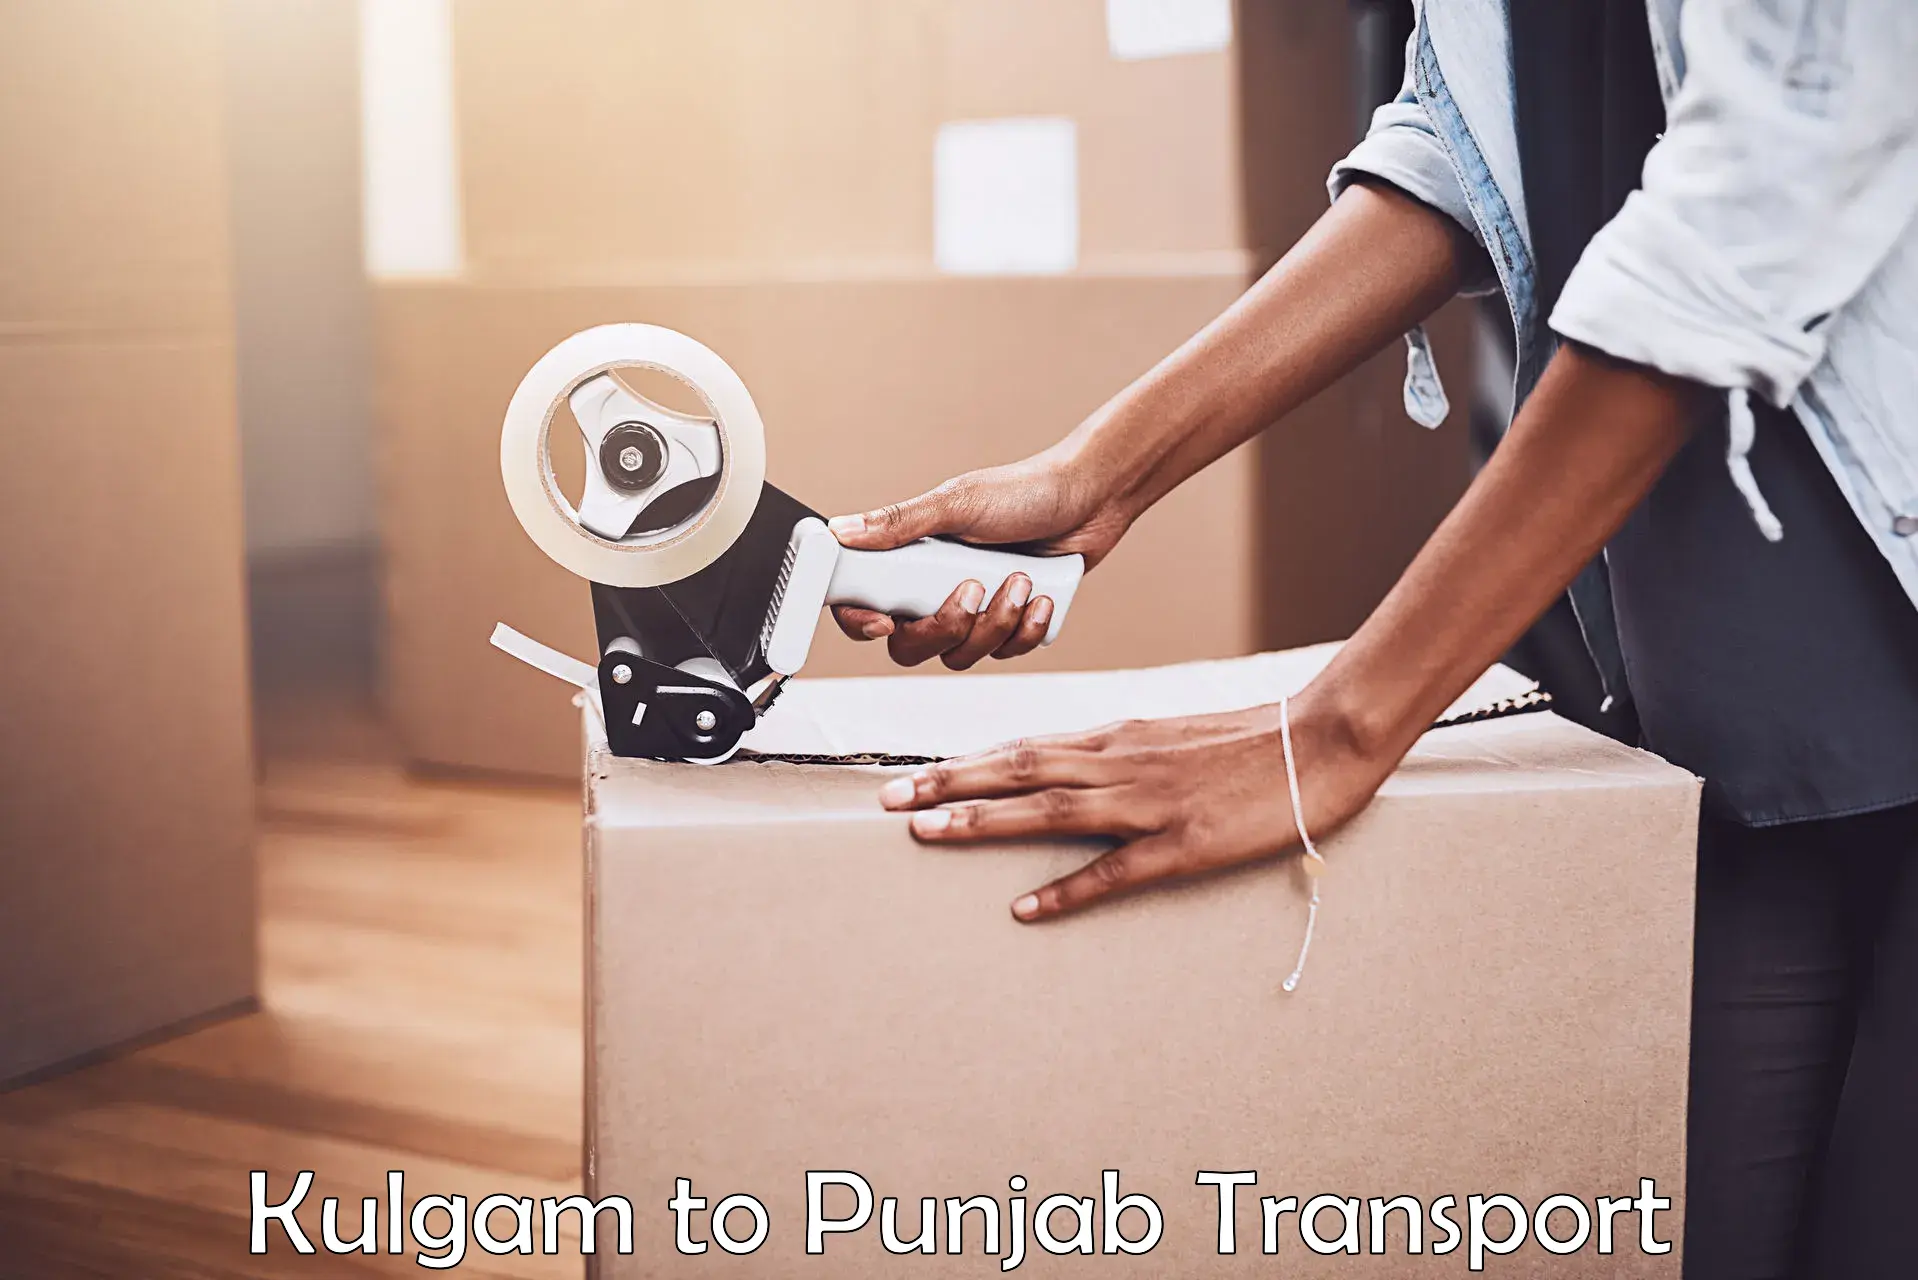 Luggage transport services in Kulgam to Central University of Punjab Bathinda